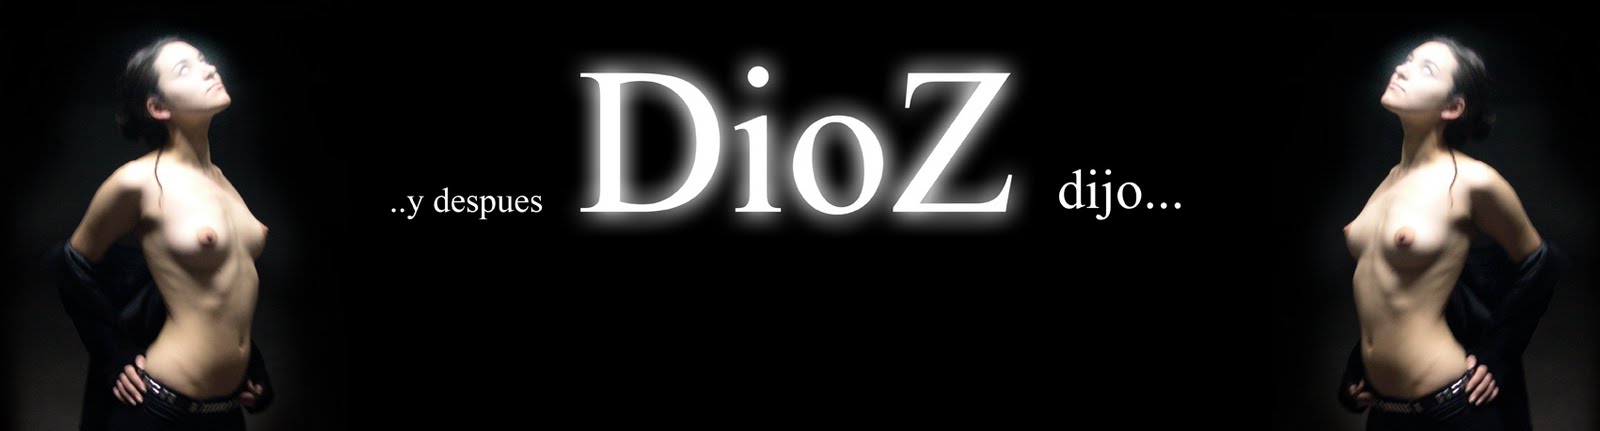 Blog de Dioz